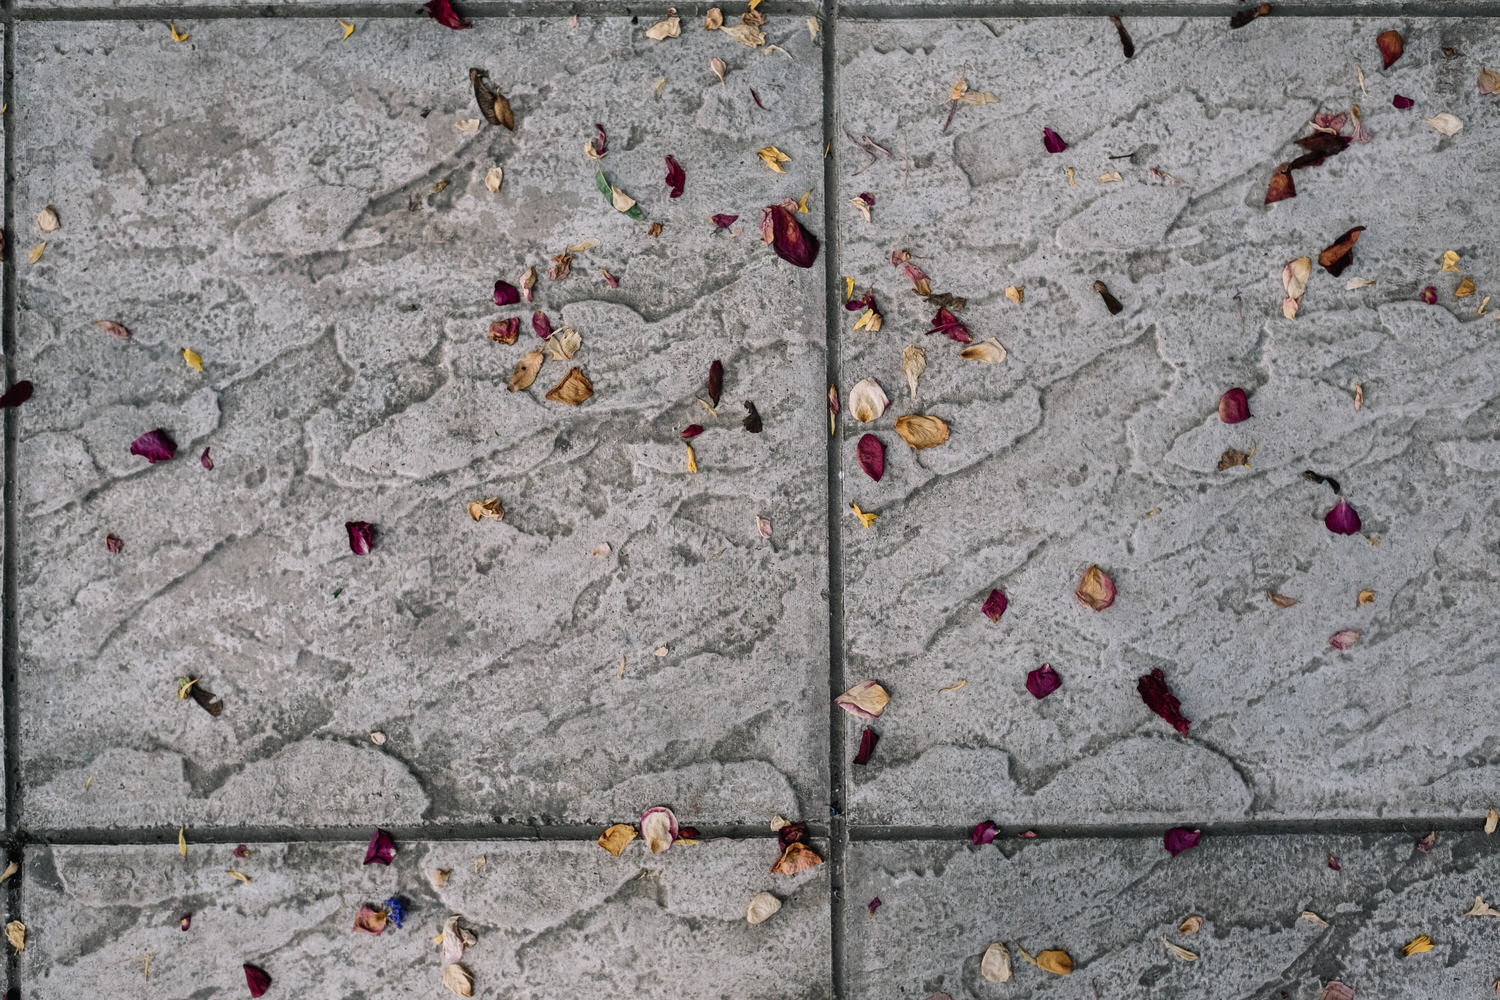 confetti-floor-detailjpg.jpg